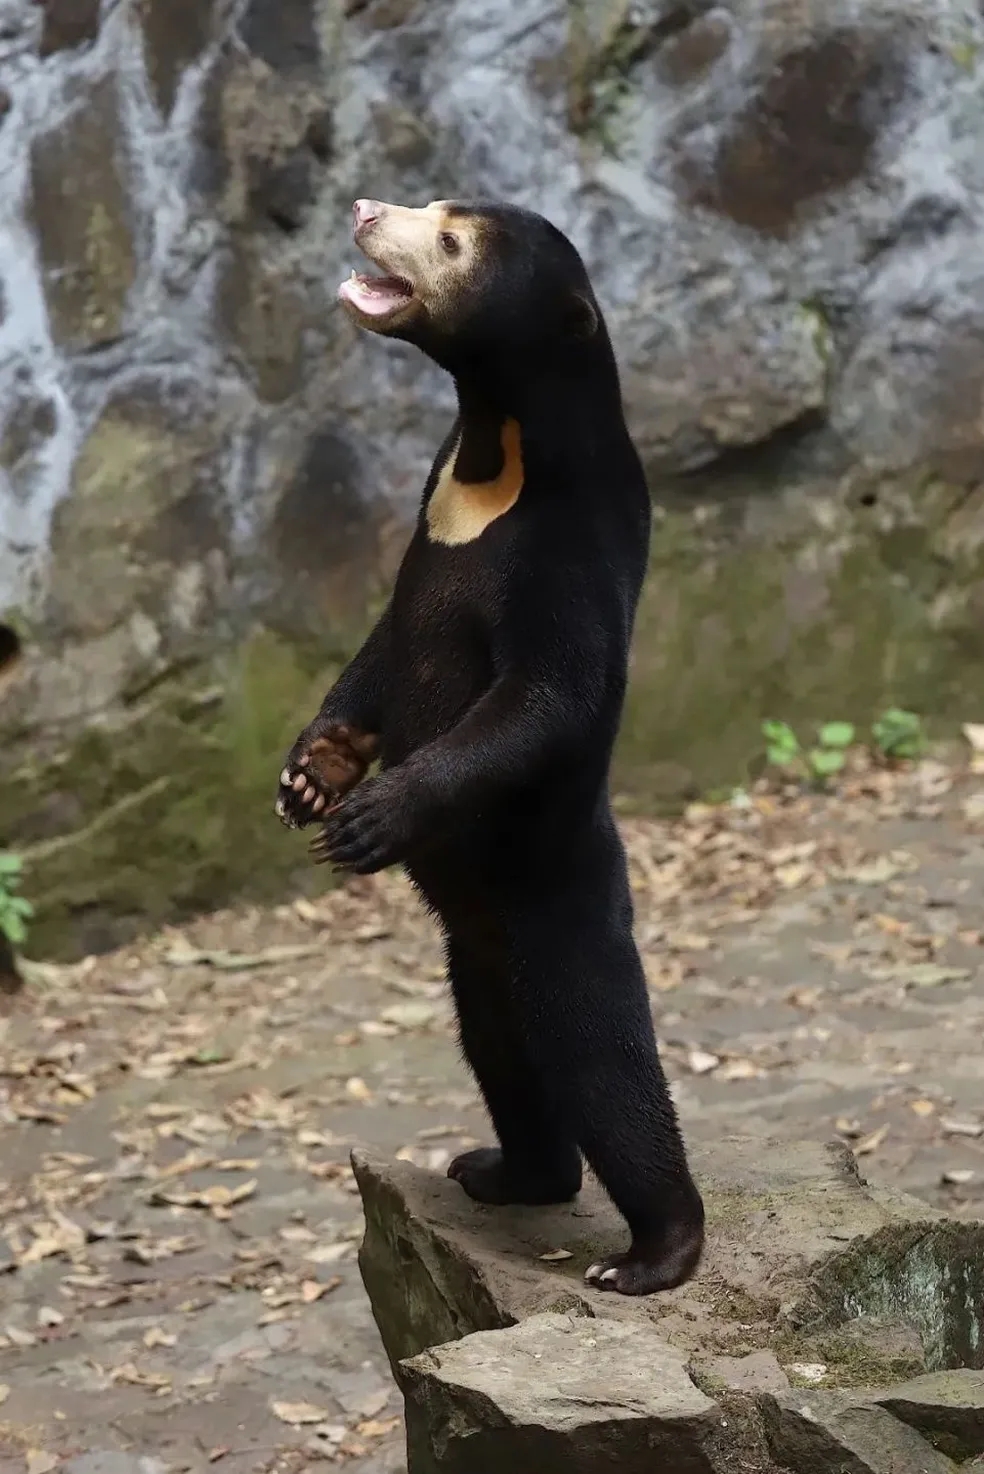 Humano fantasiado? Após acusações, zoológico da China explica polêmica com urso